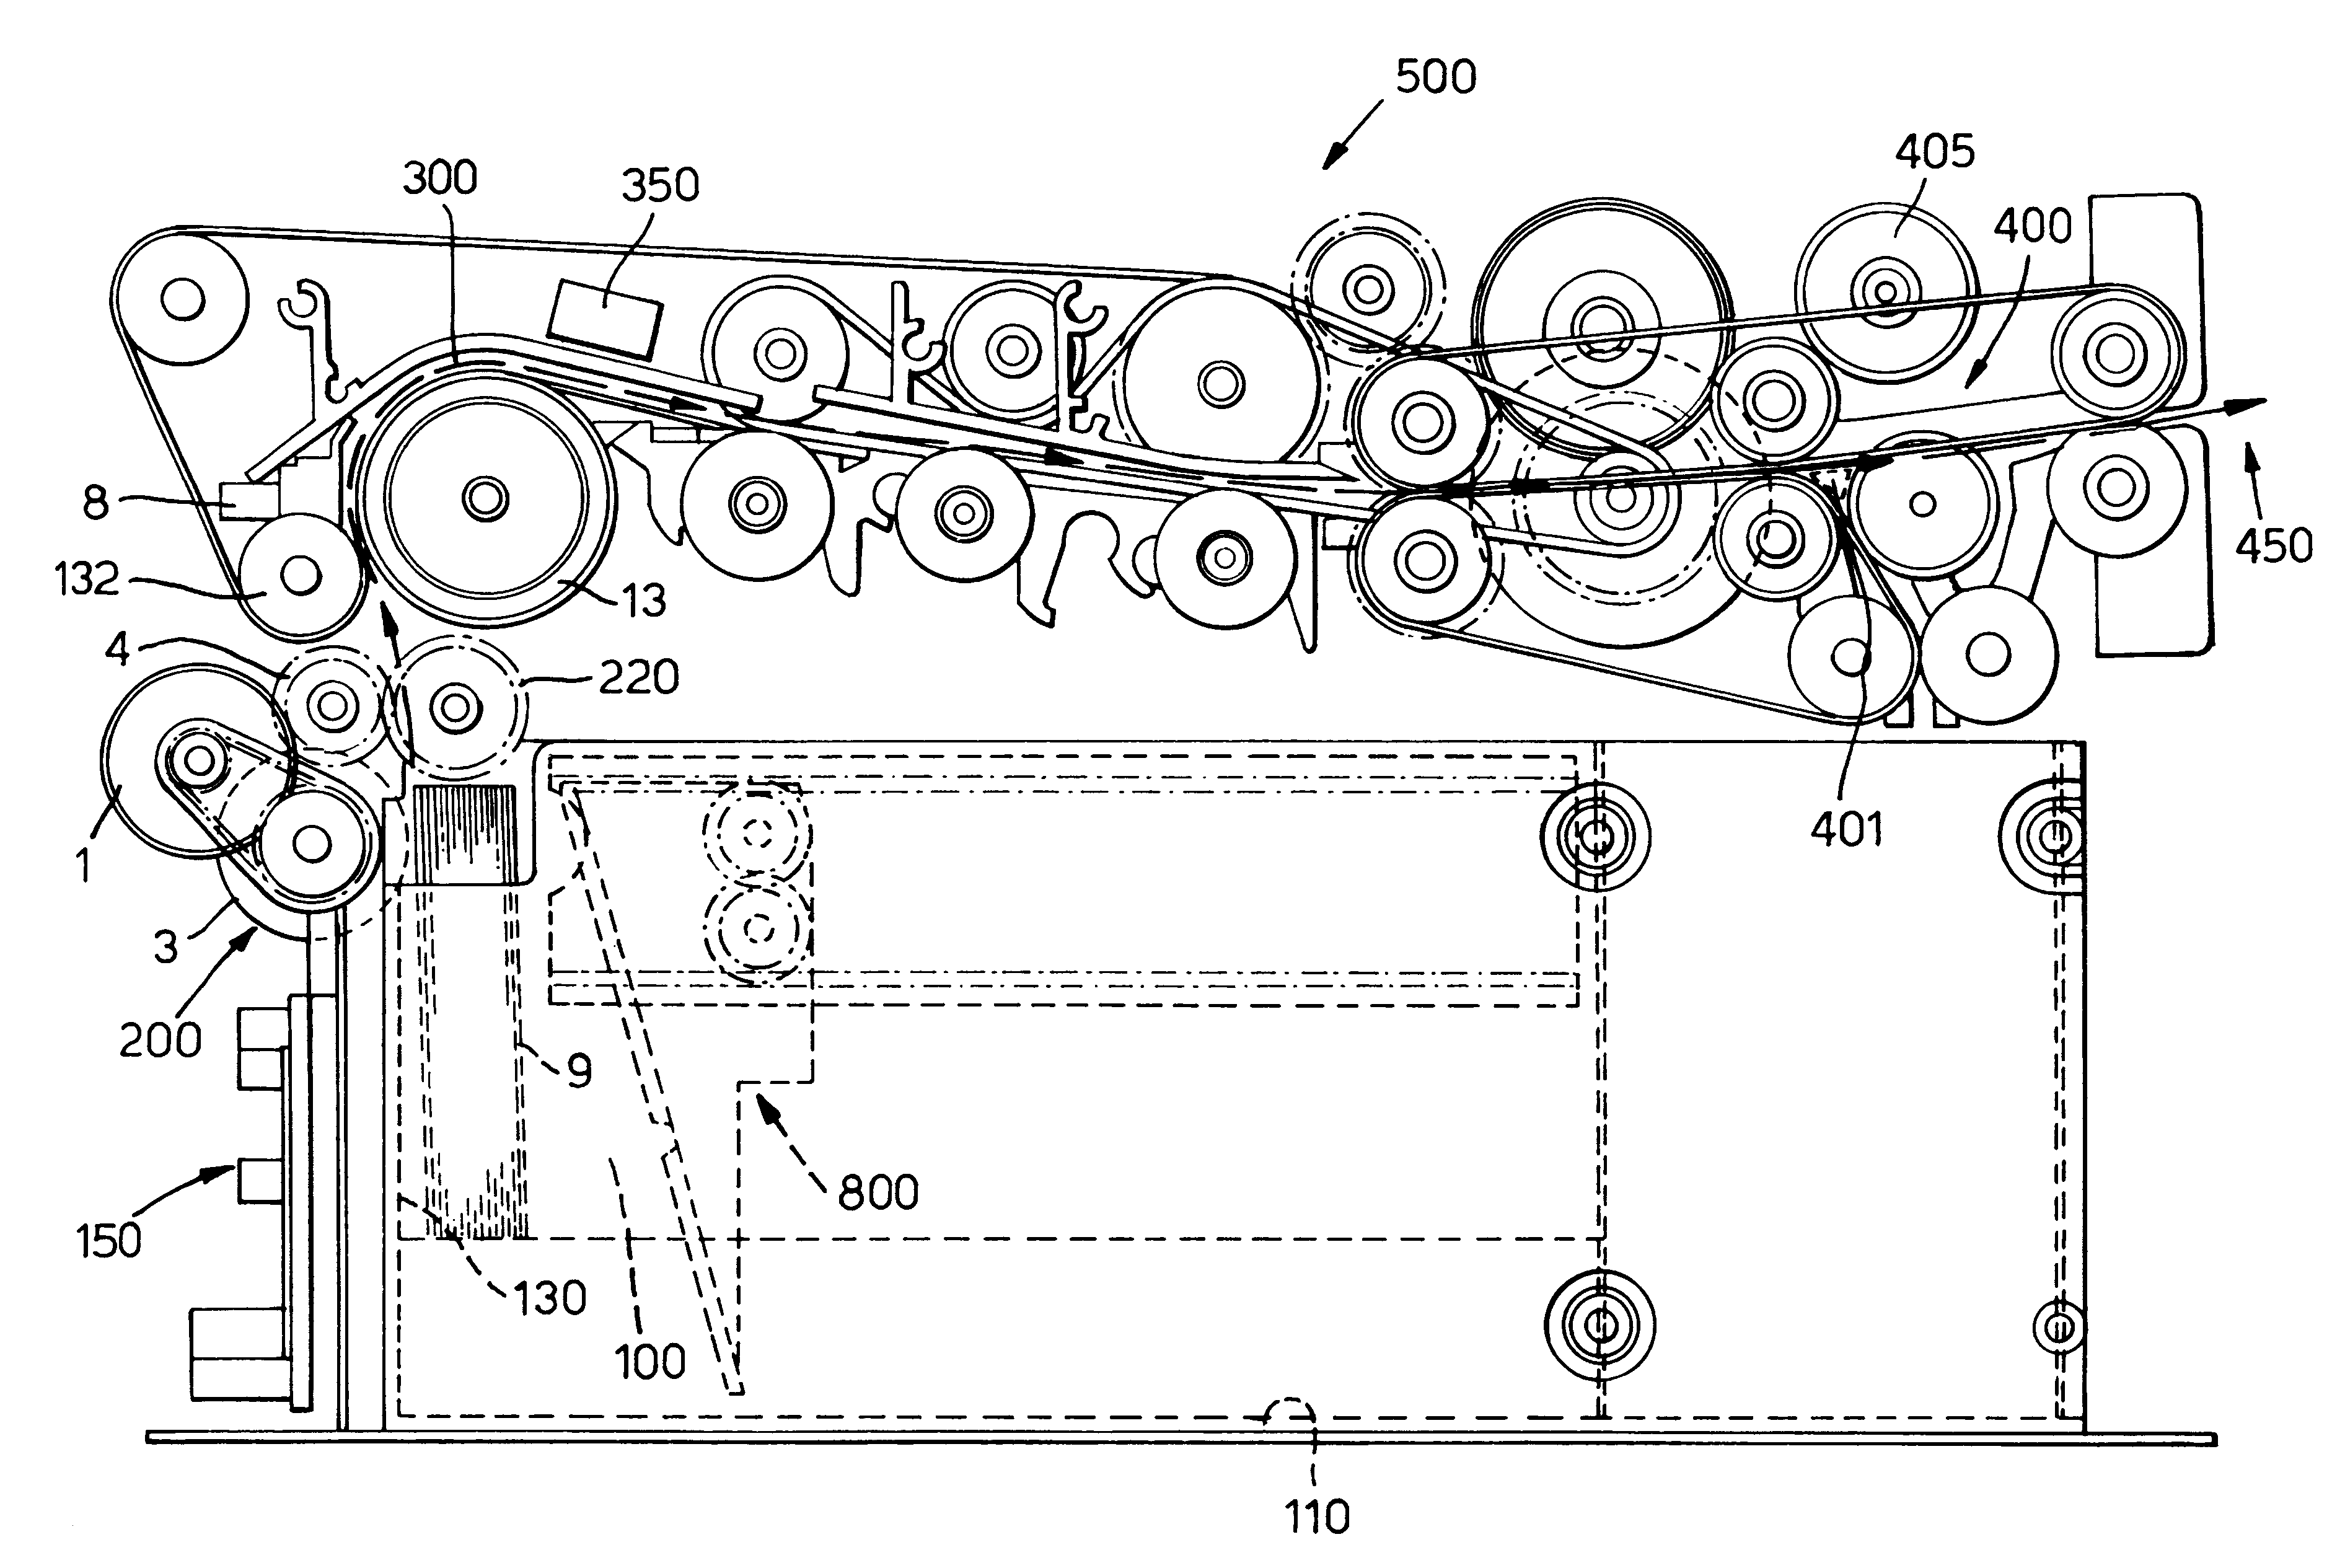 Document dispensing apparatus